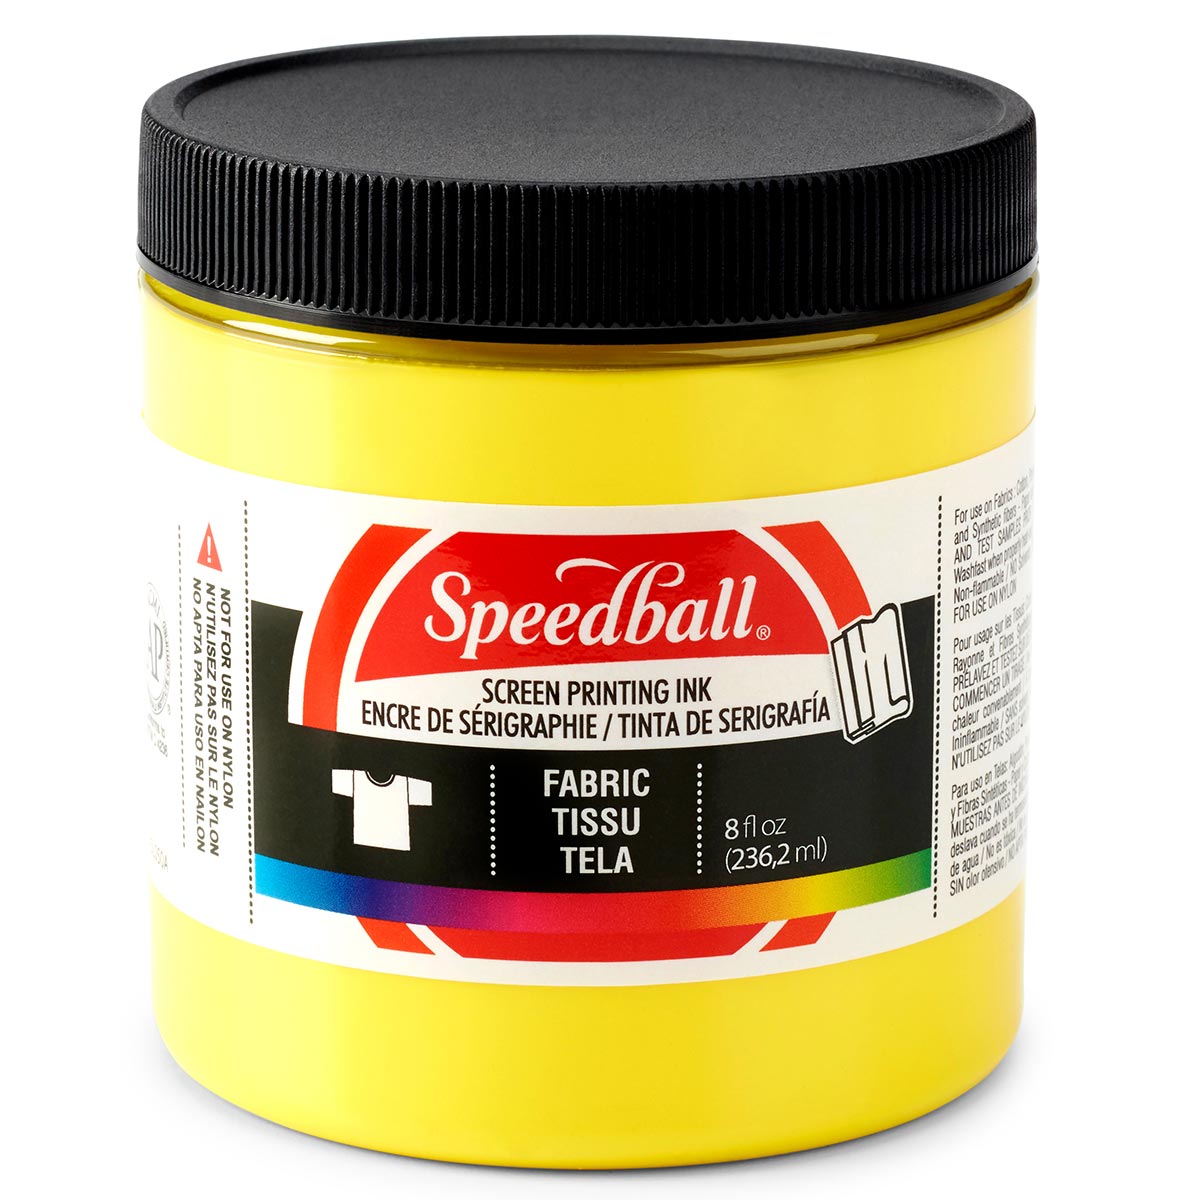 Speedball - Encre de sérigraphie pour tissu 236 ml (8oz) - Jaune